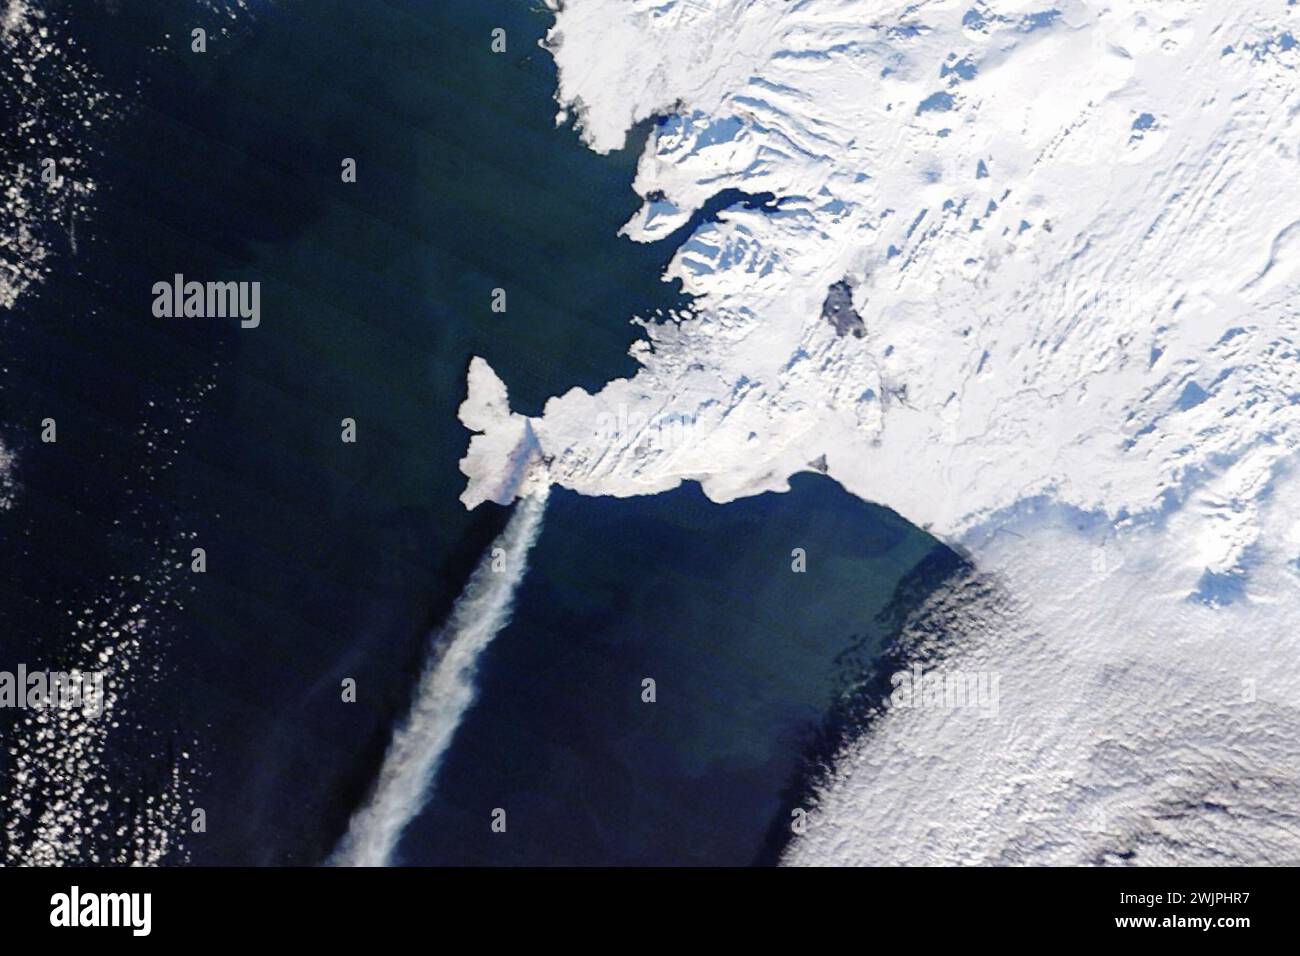 Islanda. 8 febbraio 2024. Dopo una pausa in attività, la lava fresca si è nuovamente riversata dalla penisola di Reykjanes nel sud-ovest dell'Islanda. L'ultima eruzione, la terza nella regione dal dicembre 2023, è iniziata all'inizio dell'8 febbraio 2024, con spruzzi di lava fino ad altezze di 80 metri (260 piedi) lungo una fessura lunga 3 chilometri (1,8 miglia) vicino al Monte Sylingarfell. La piccola vetta si trova a nord del villaggio di pescatori di Grindavik e ad est della centrale elettrica di Svartsengi e delle terme geotermiche della Laguna Blu. L'immagine è stata acquisita il 10 febbraio 2024 da oli-2 (Operational Land Imager-2) su Landsat 9. (Credito Foto Stock